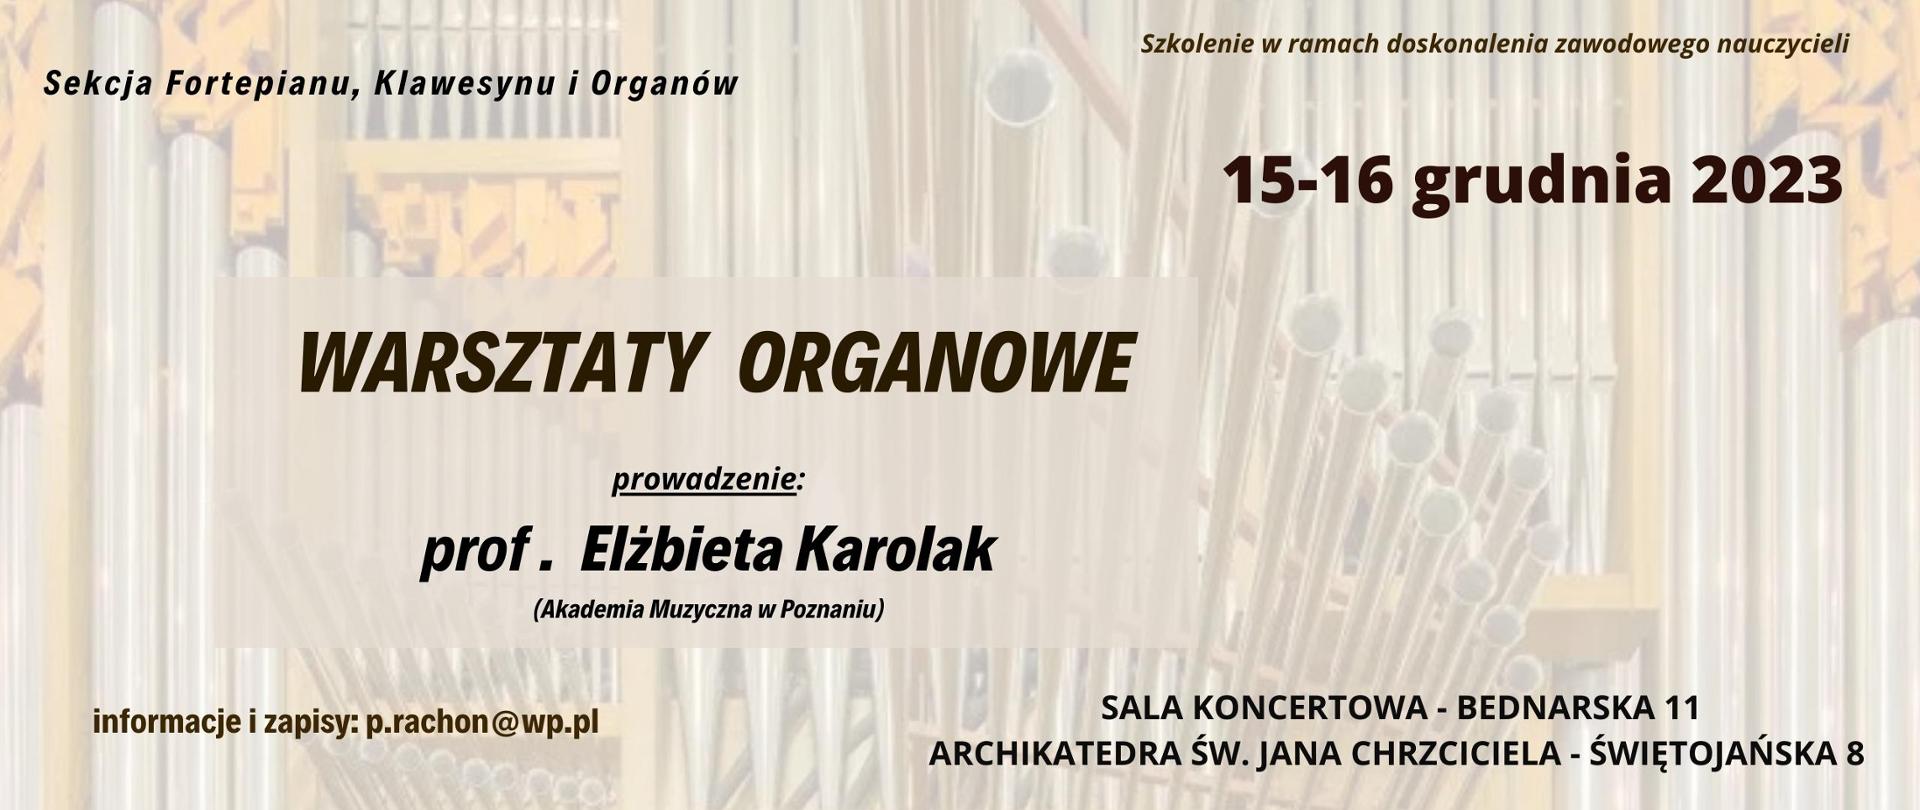 Baner - Warsztaty organowe - Elżbieta Karolak, 15-16.12.2023